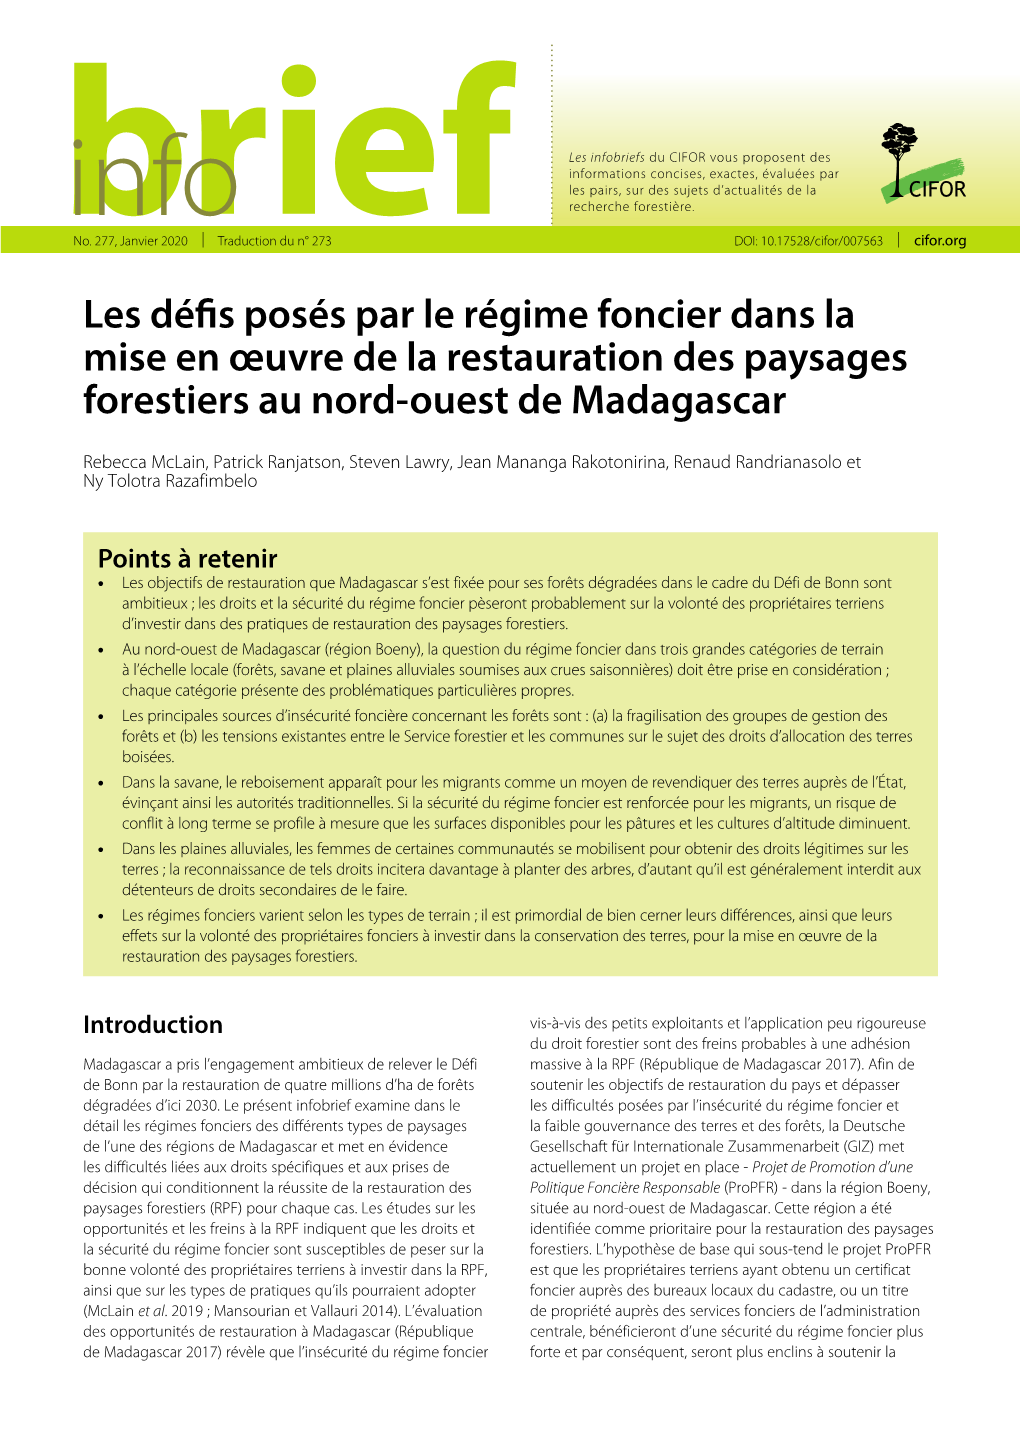 Les Défis Posés Par Le Régime Foncier Dans La Mise En Œuvre De La Restauration Des Paysages Forestiers Au Nord-Ouest De Madagascar